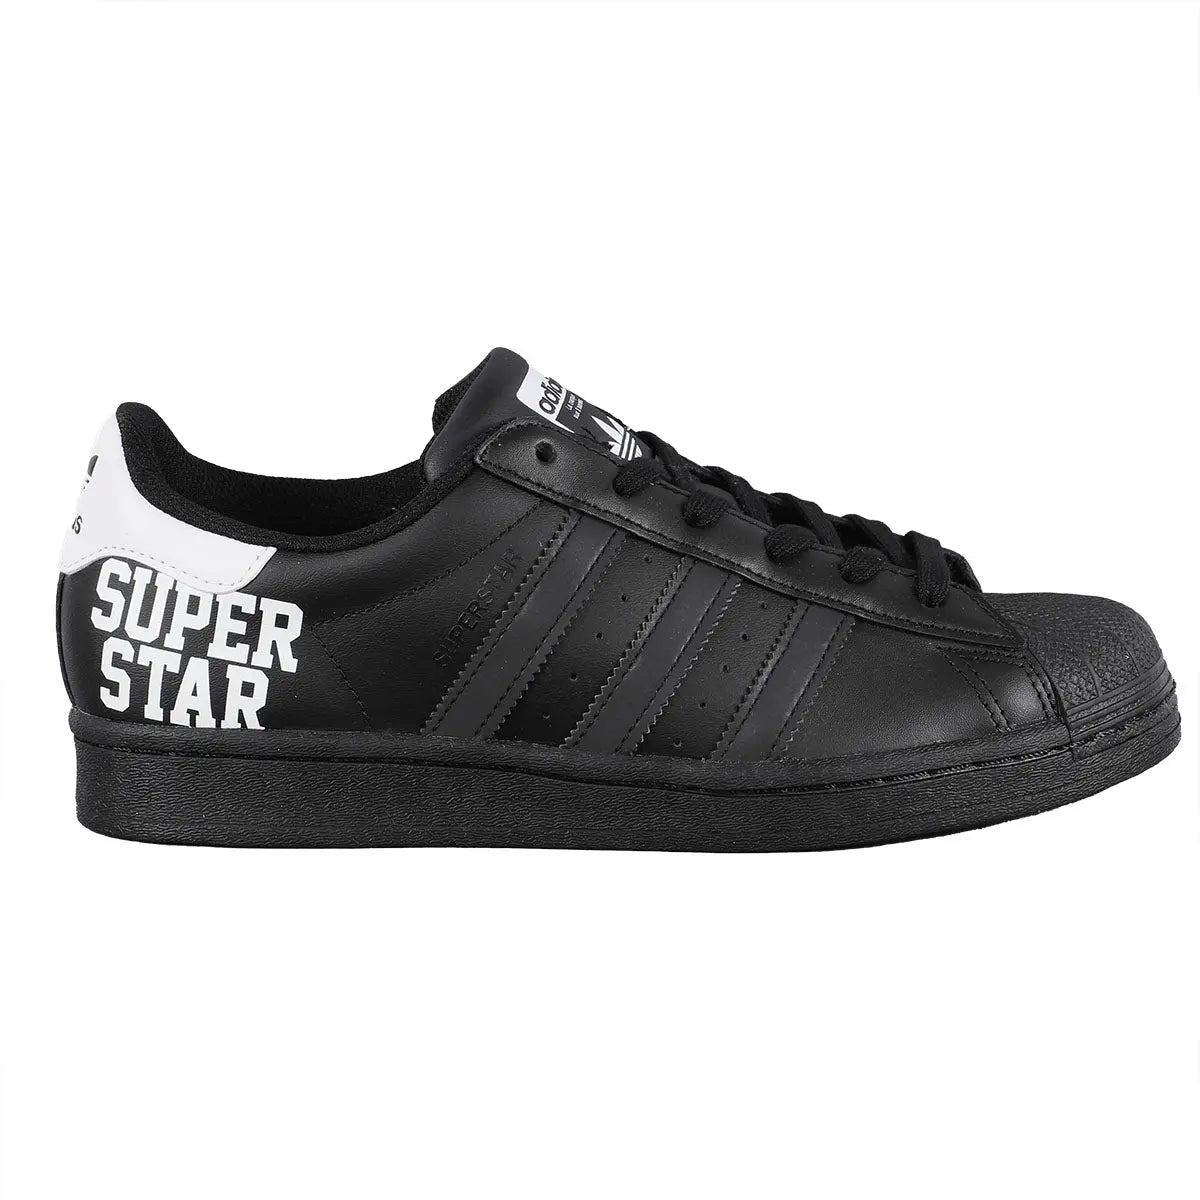 Adidas Superstar 80s Shoes White 8.5 - Womens Originals Shoes